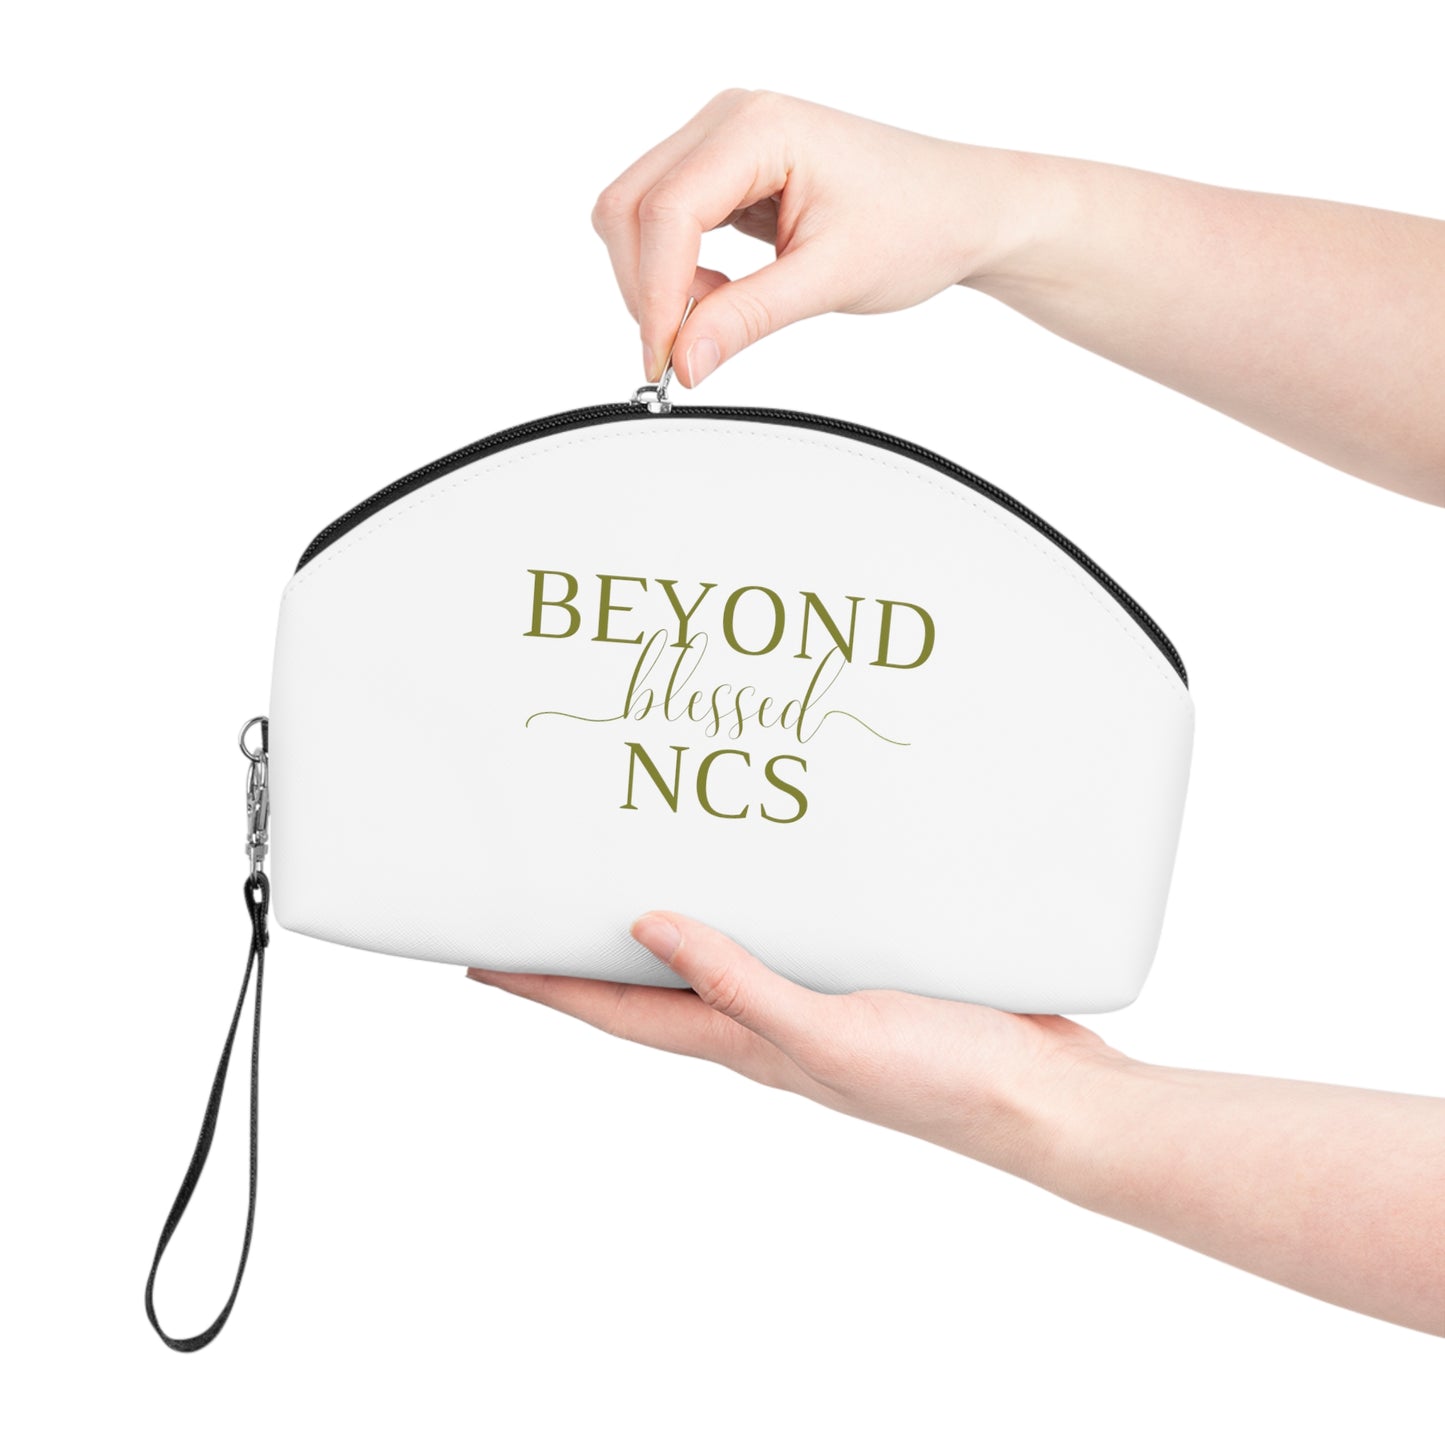 Beyond Blessed NCS - Makeup Bag - Olive Green